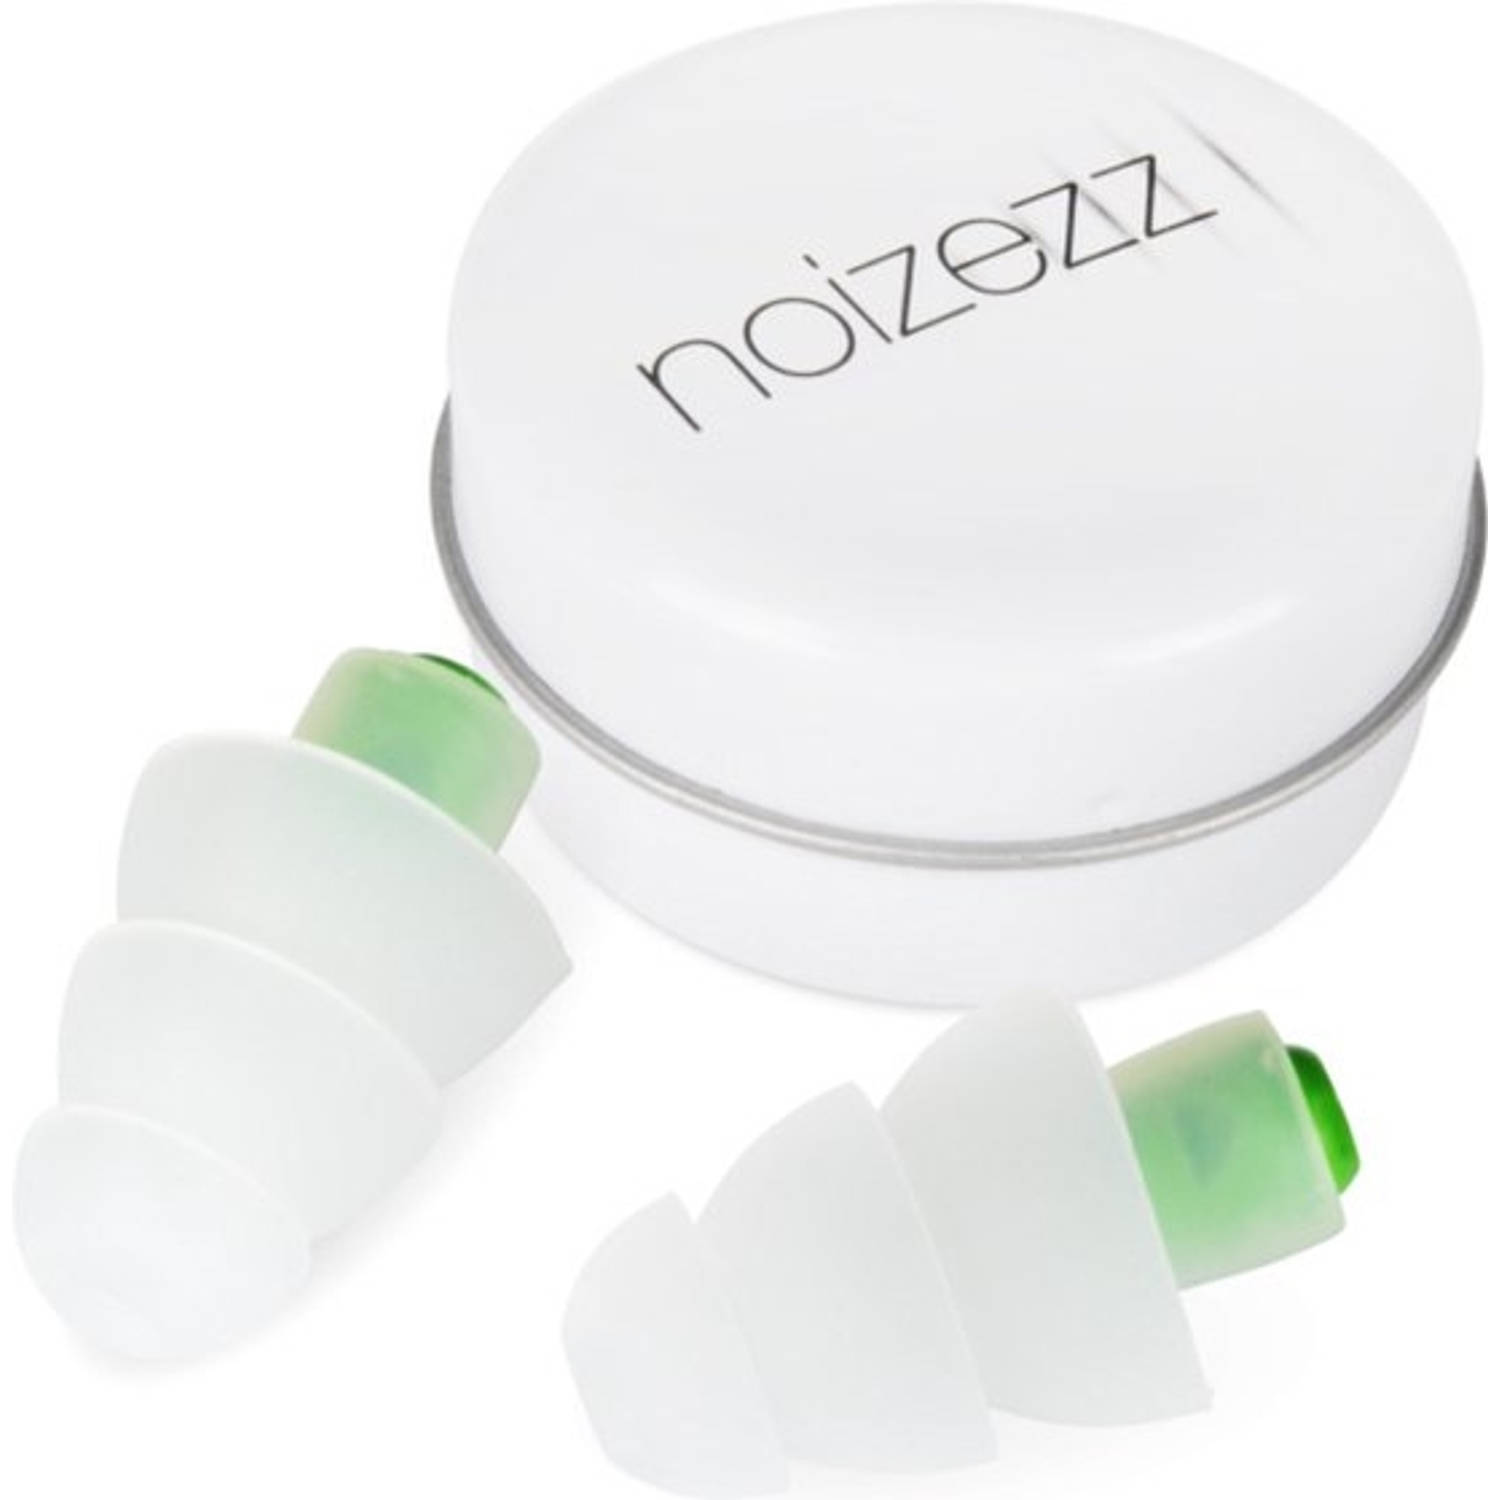 Noizezz - Green Medium - One size fits all gehoorbescherming met demping tot 24 dB - Groen - paar